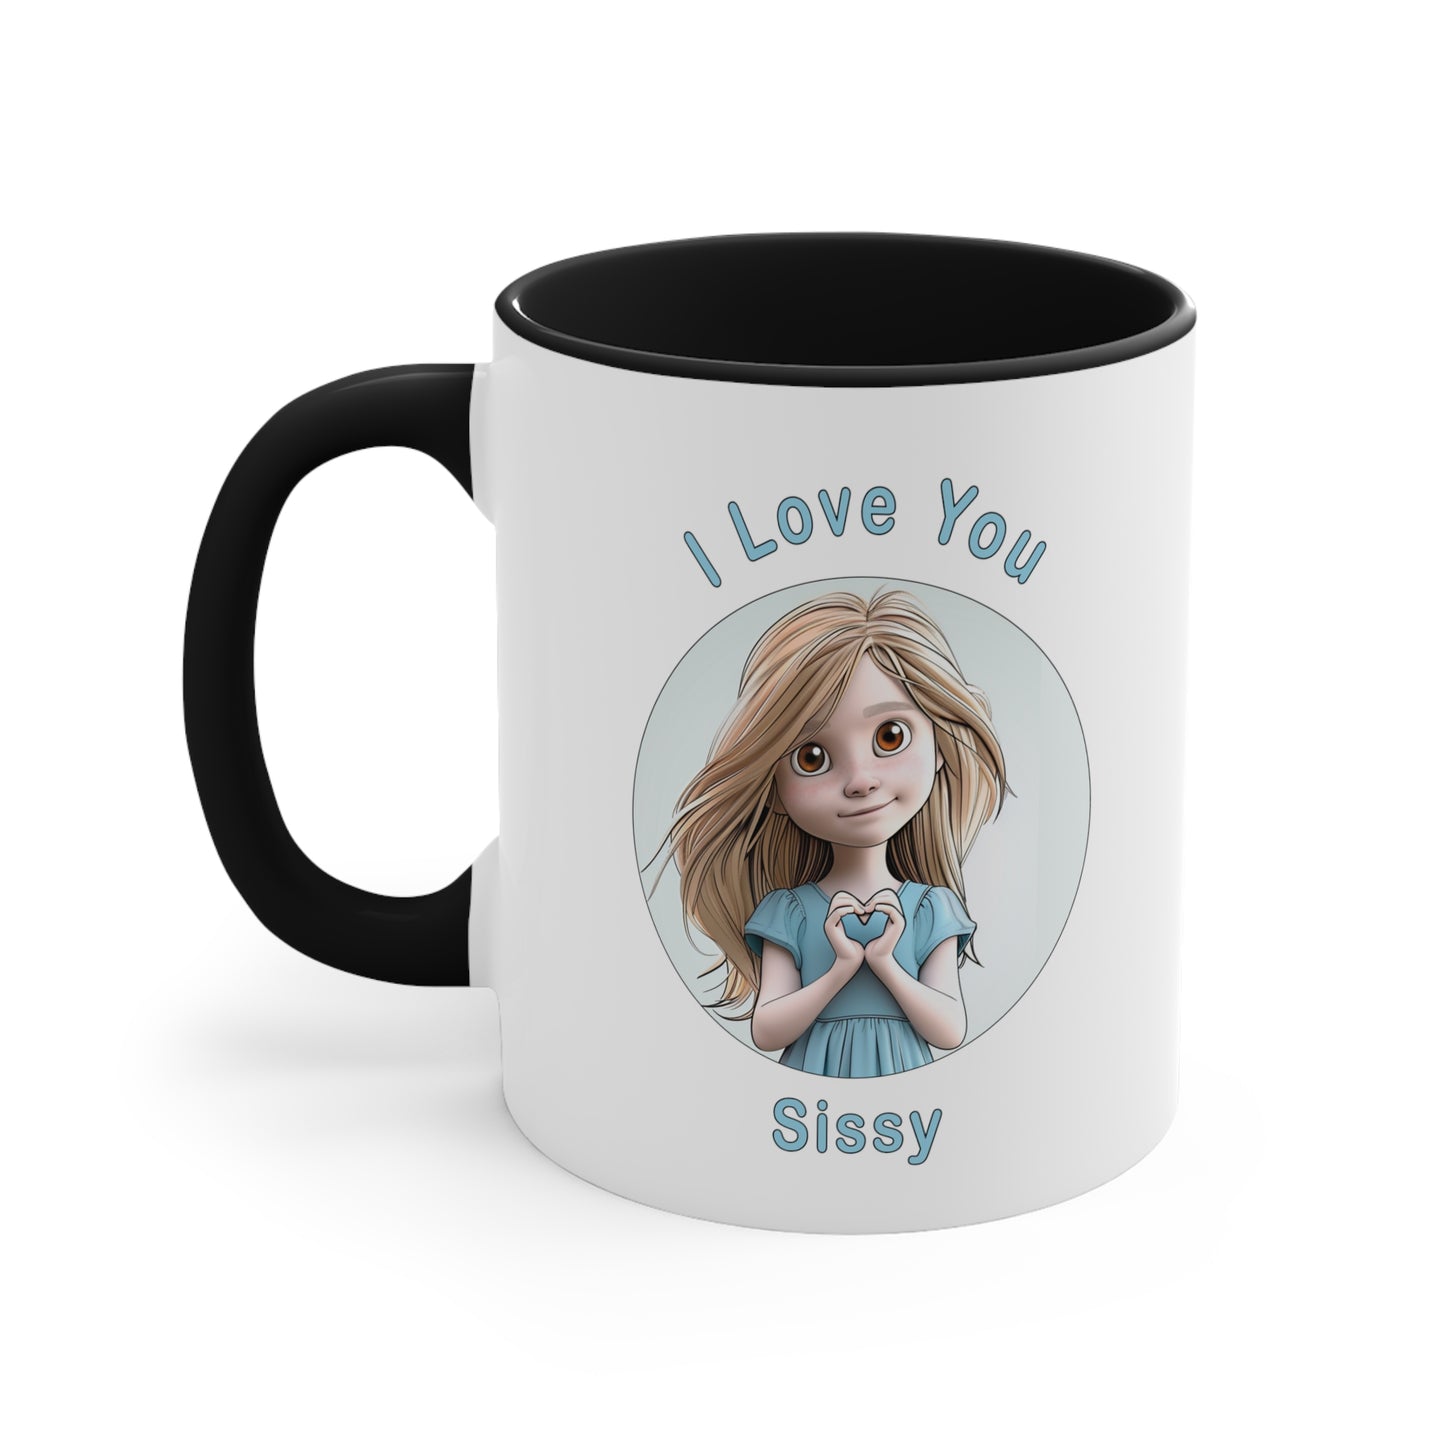 I love You Sissy Coffee Mug, 11oz